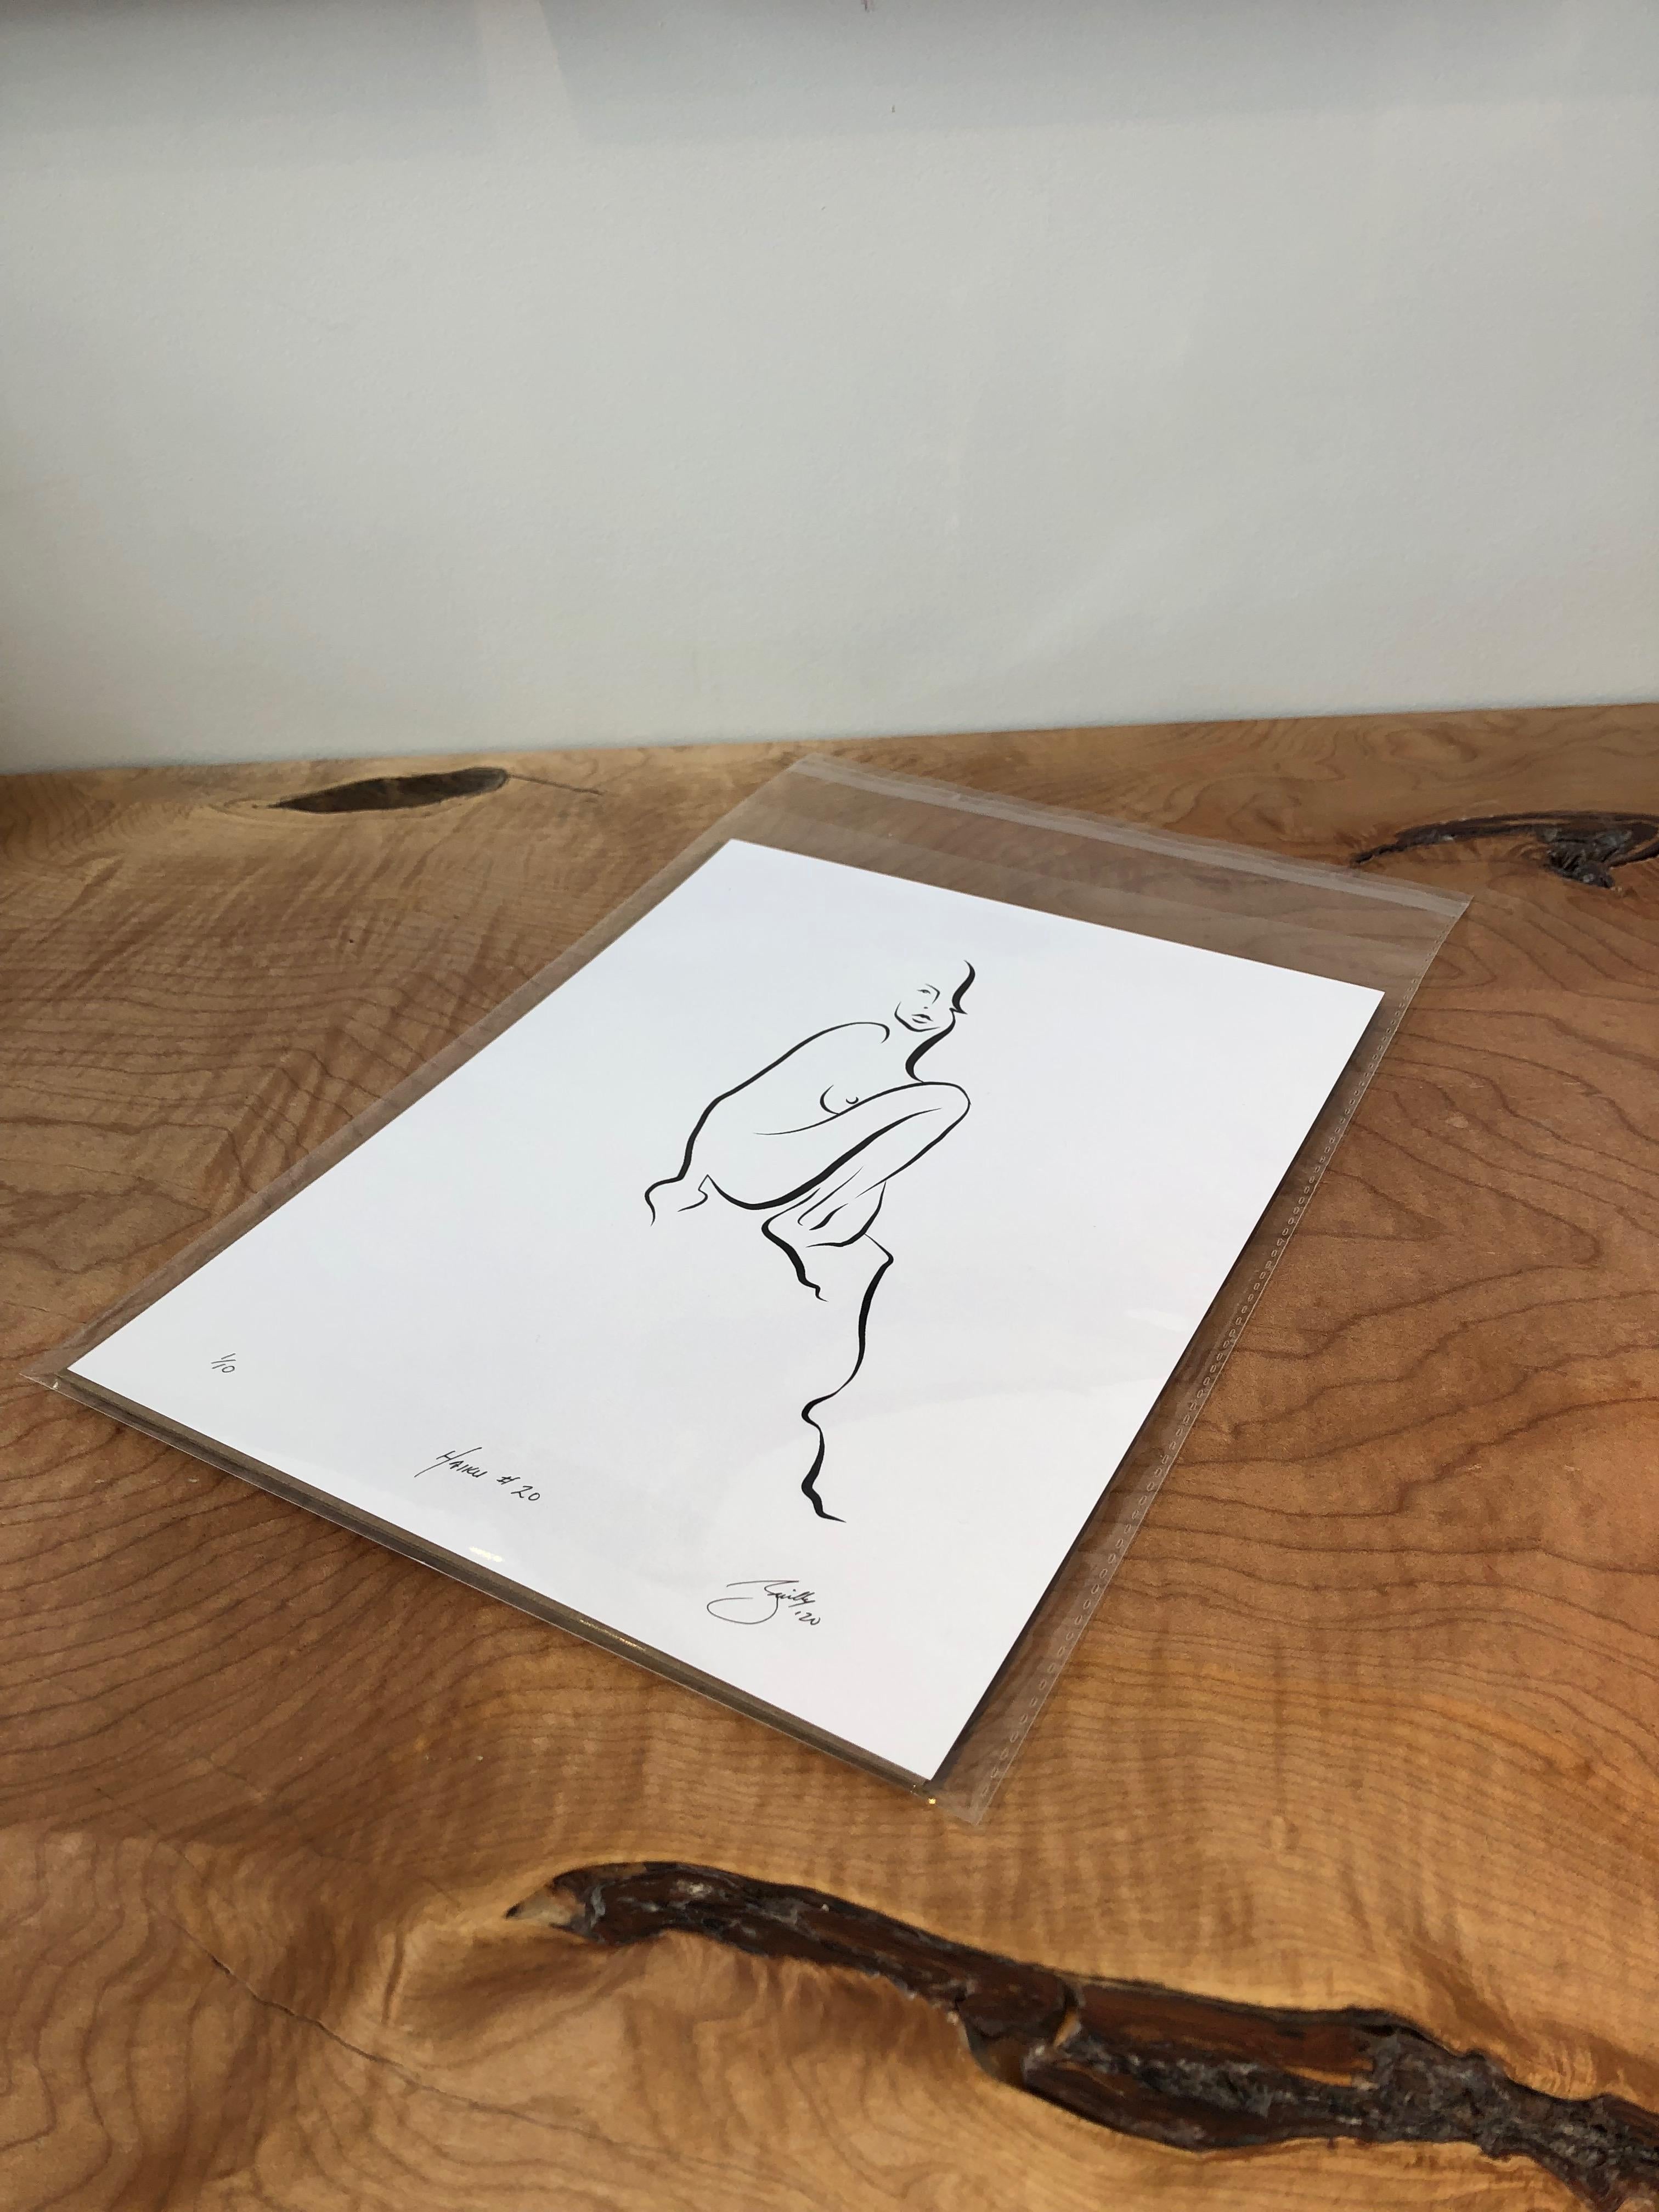 Haiku #20 - Digital Vector Drawing Sitting Female Nude Woman Figure Knee Raised - Contemporary Art by Michael Binkley